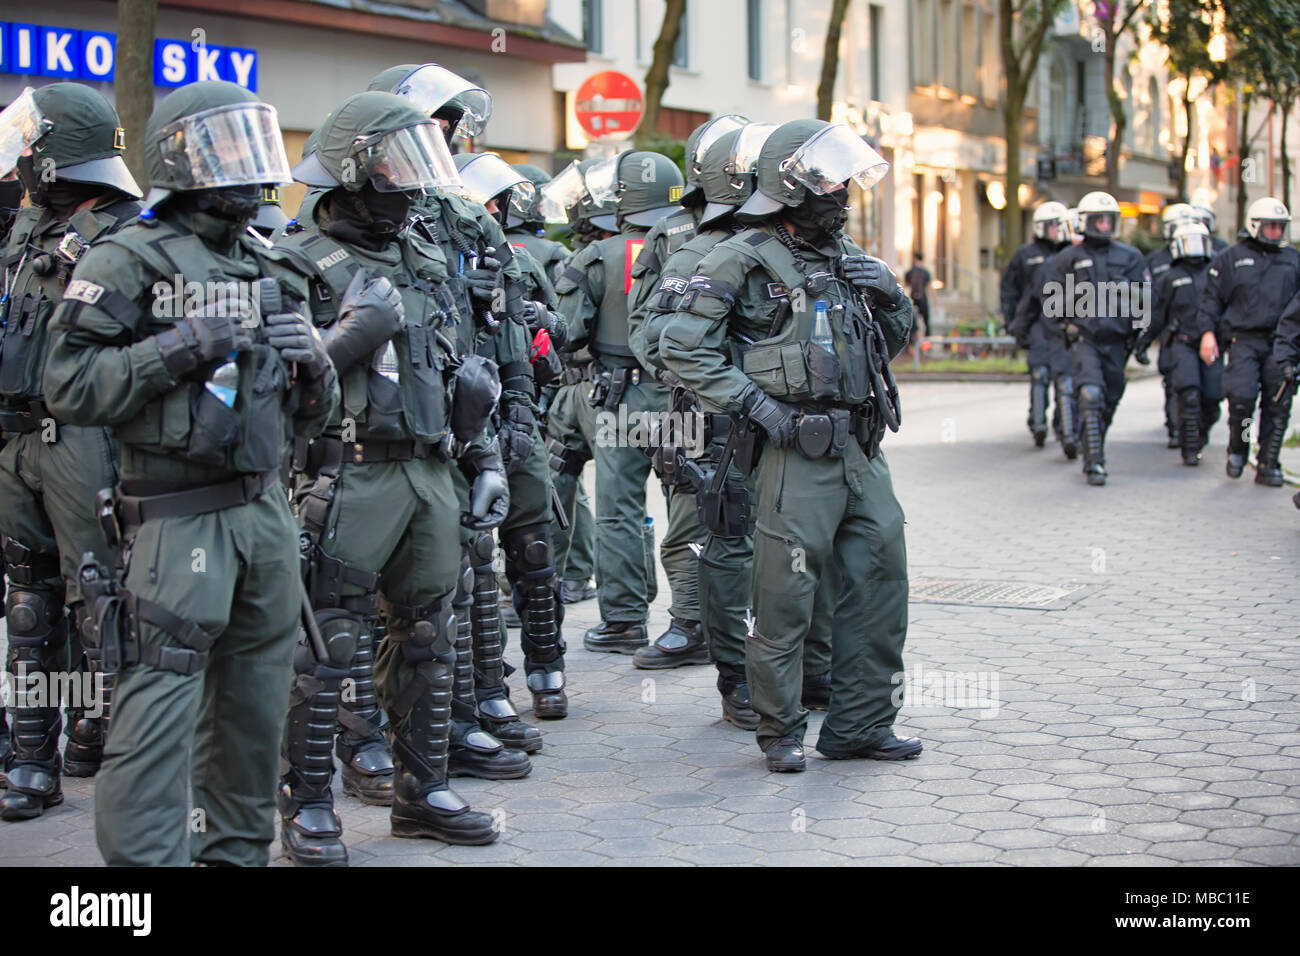 Eine Beweissicherungs- und Festnahmeeinheit der Polizei Baden-Württemberg im Einsatz während des G20-Gipfels in Hamburg Stock Photo